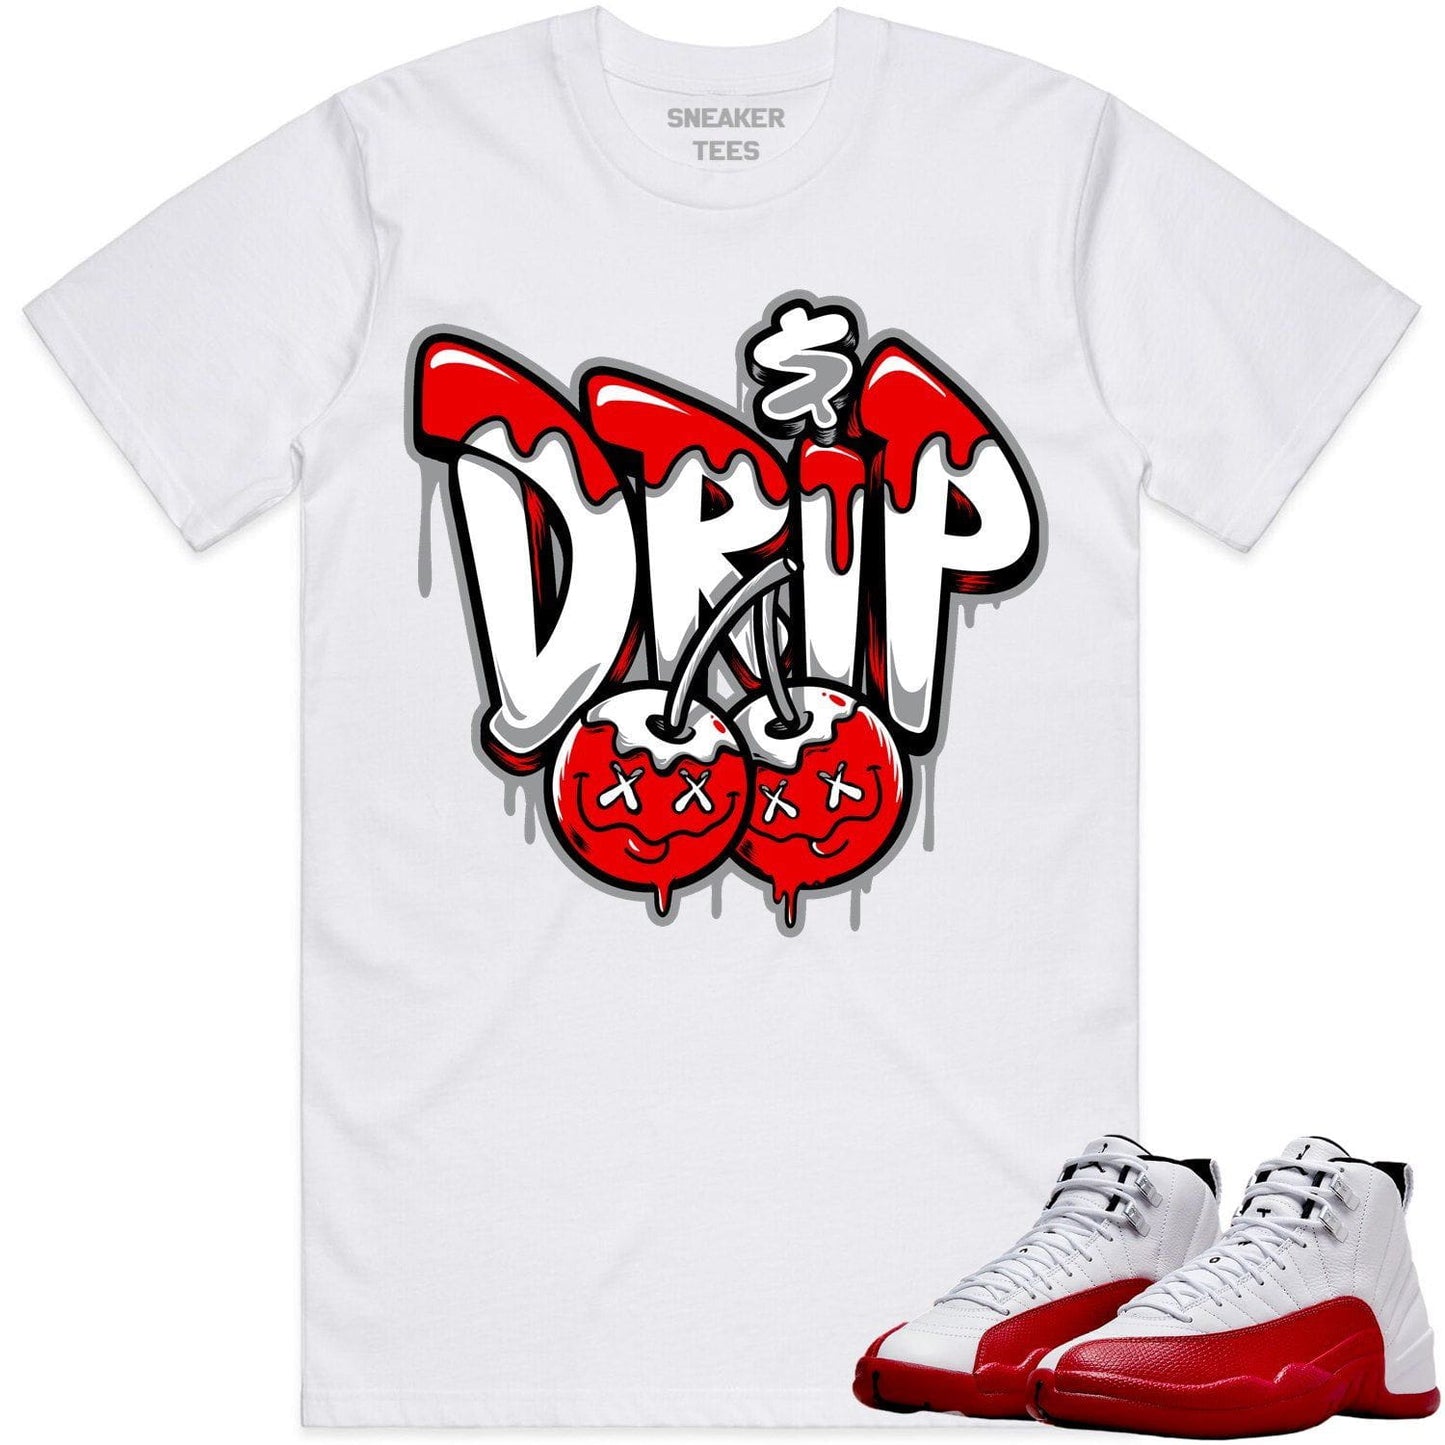 Cherry 12s Shirt - Jordan Retro 12 Cherry Shirts - Red Money Drip